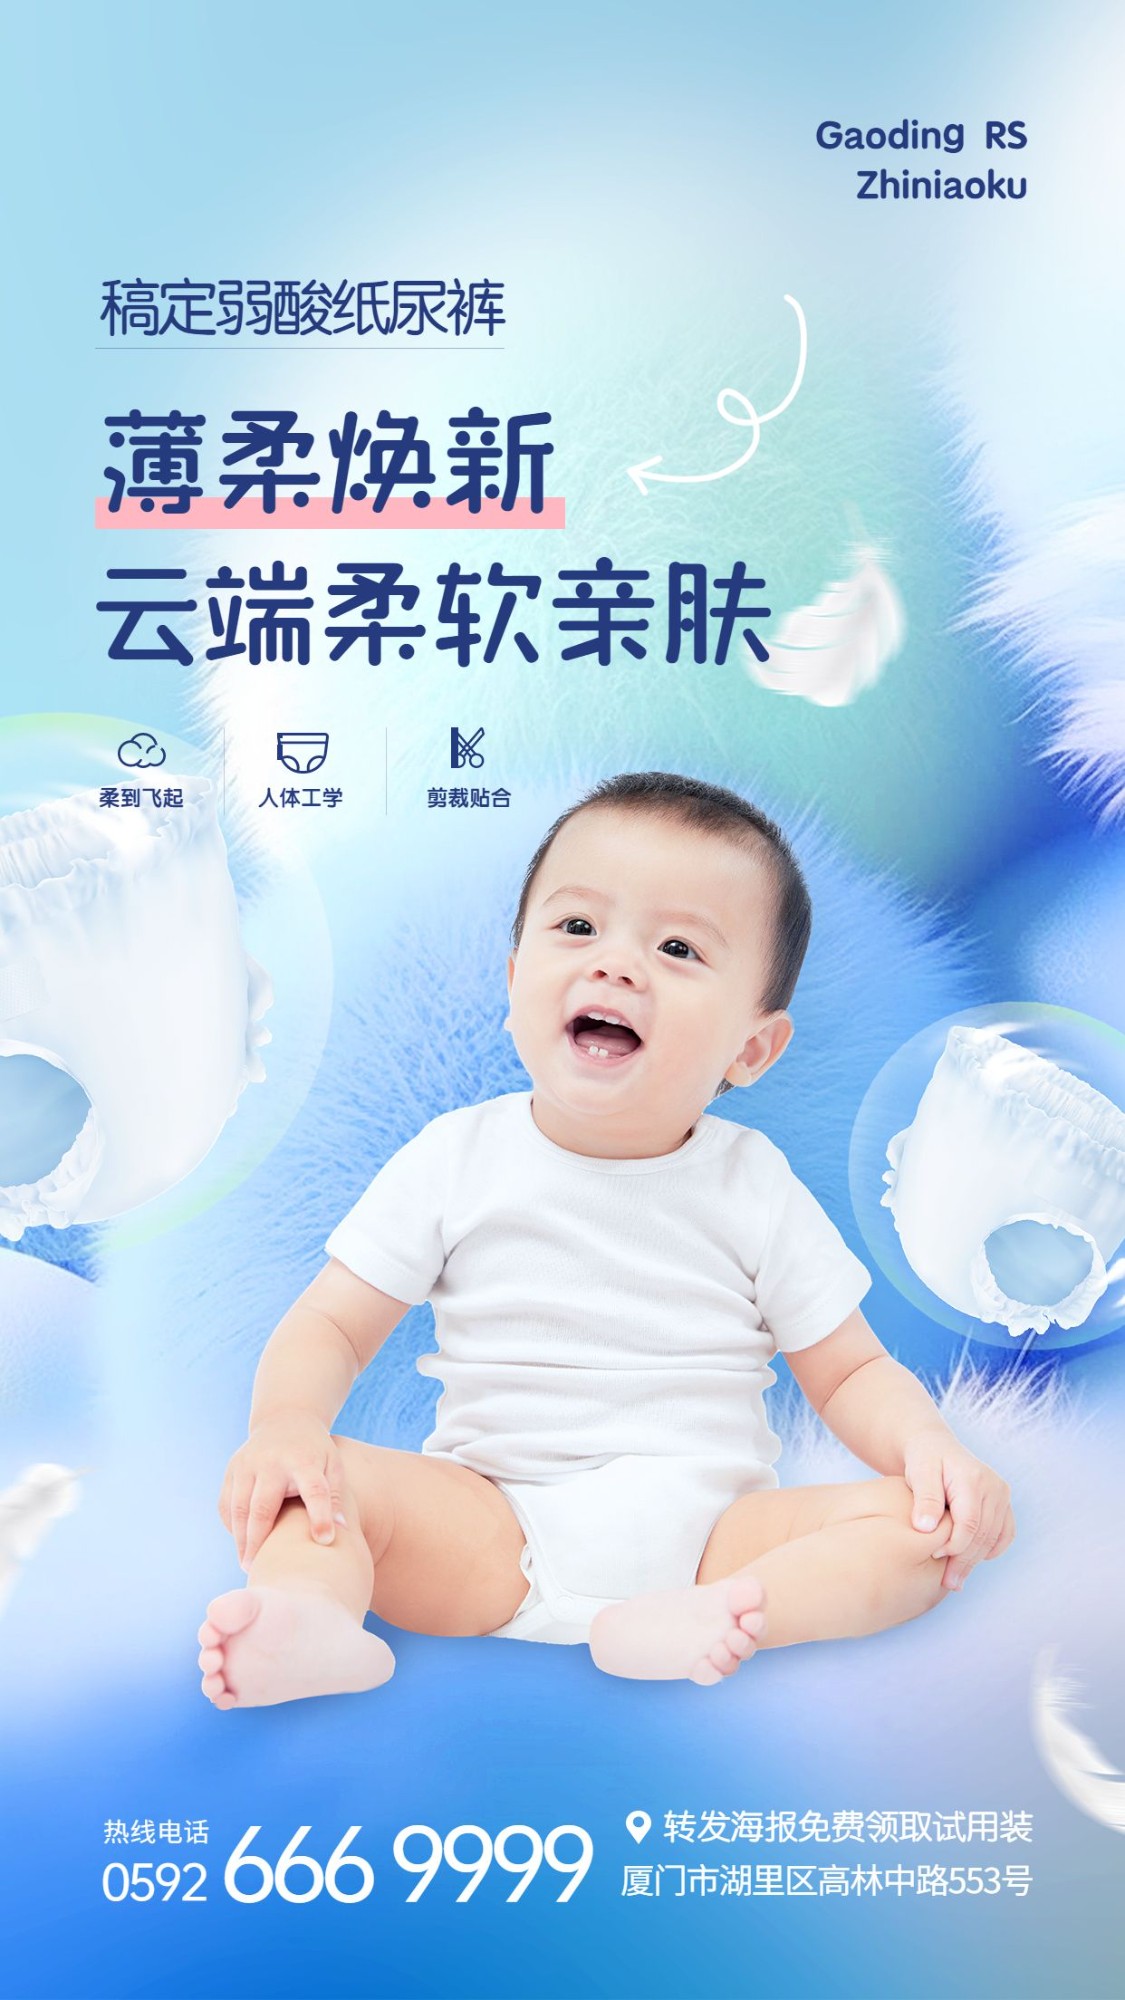 母婴亲子产品介绍活动宣传手机海报AIGC